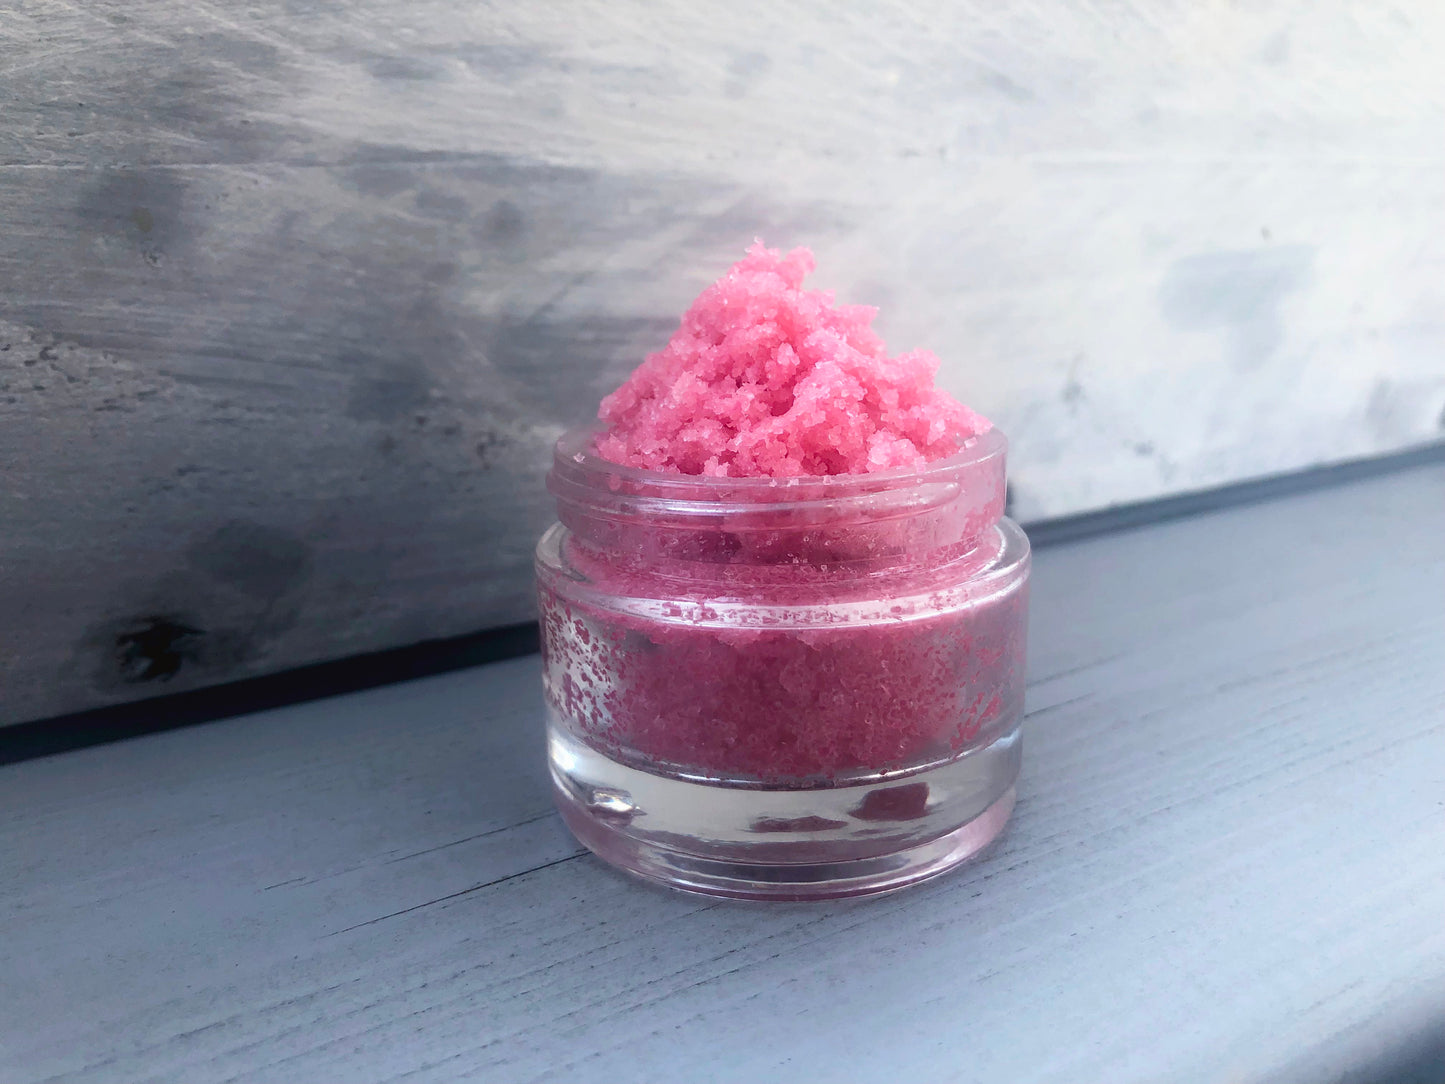 Pink strawberry sugar lip scrub used for exfoliating in a glass jar